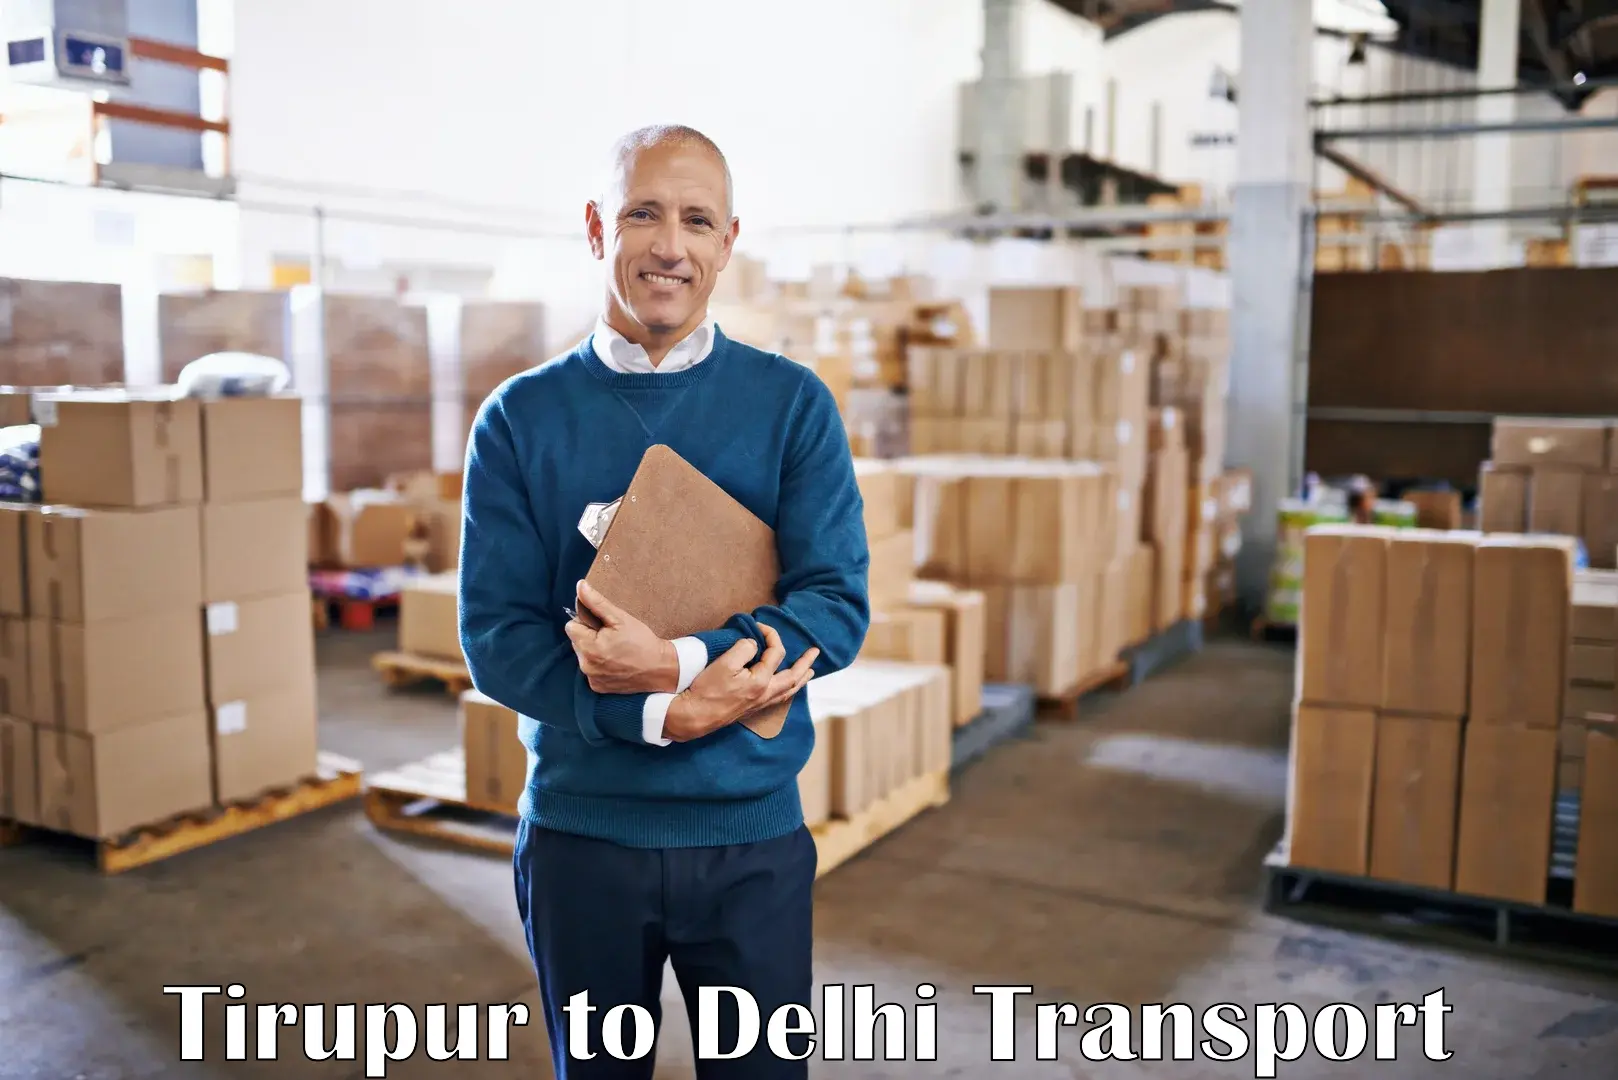 Container transport service Tirupur to Delhi